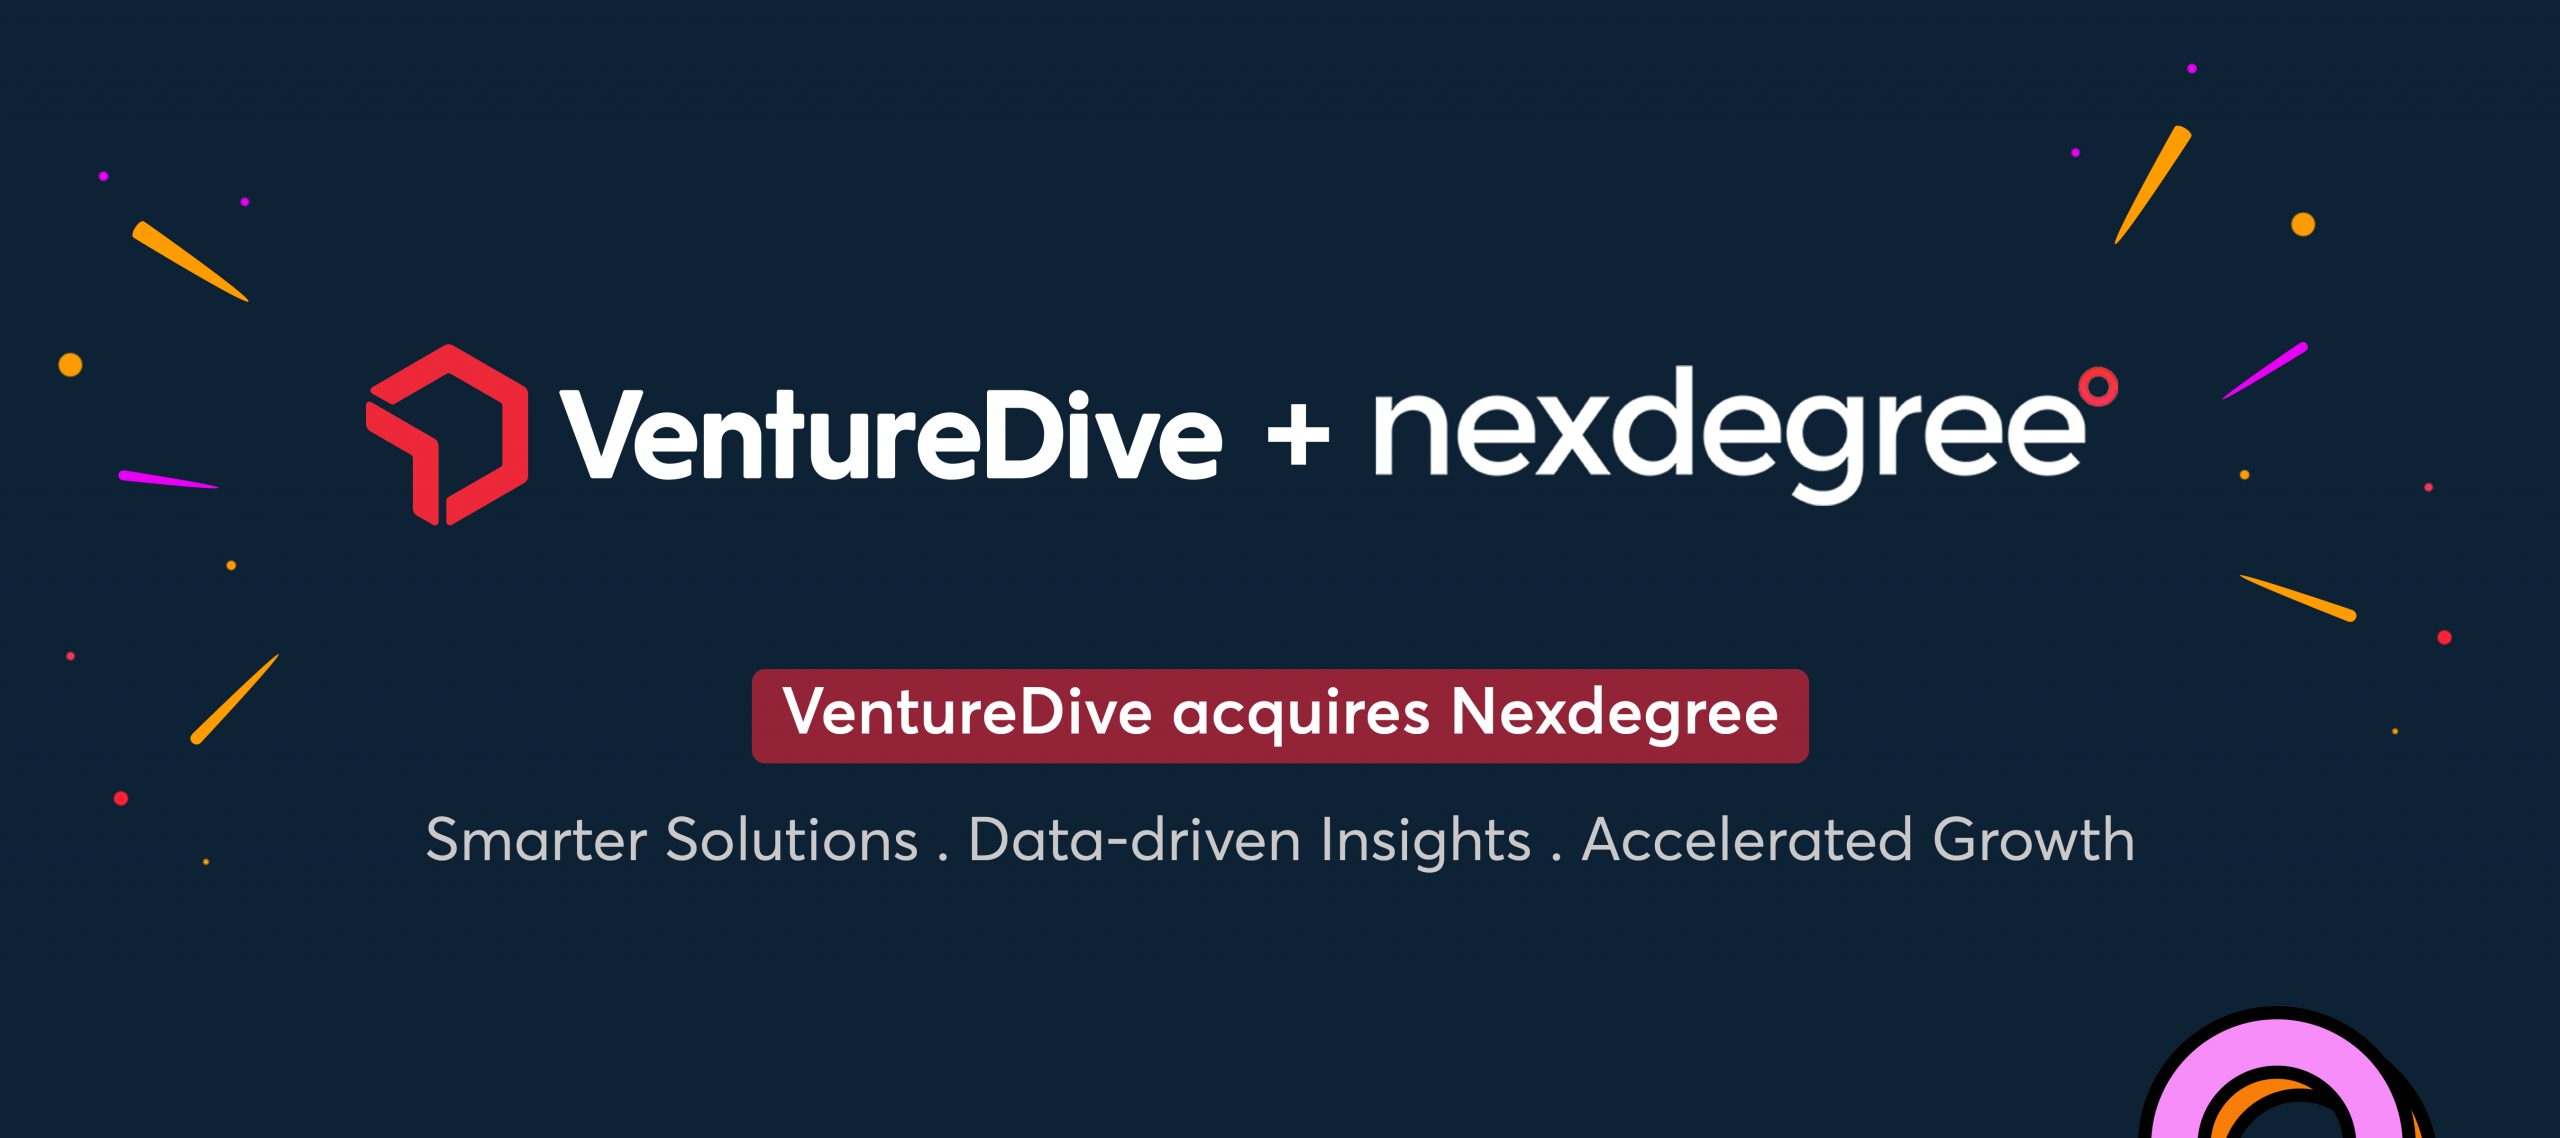 VentureDive Acquires Nexdegree, A Premier AI & Data Analytics Company